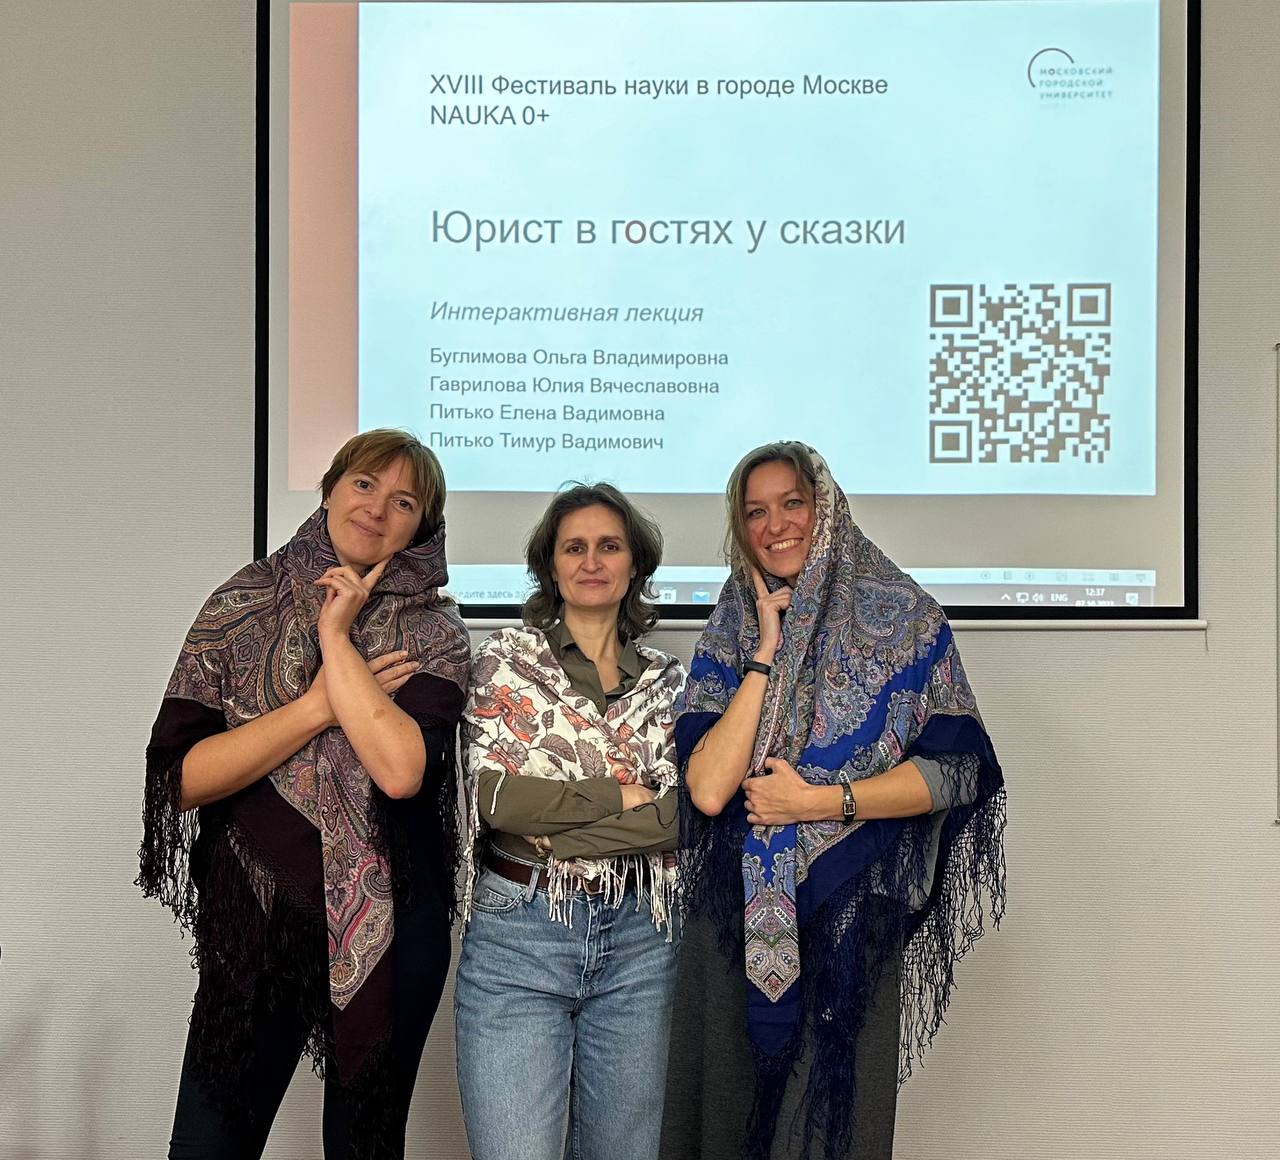 В рамках XVIII Фестиваля науки в городе Москве преподаватели ИЭУиП провели интерактивную лекцию